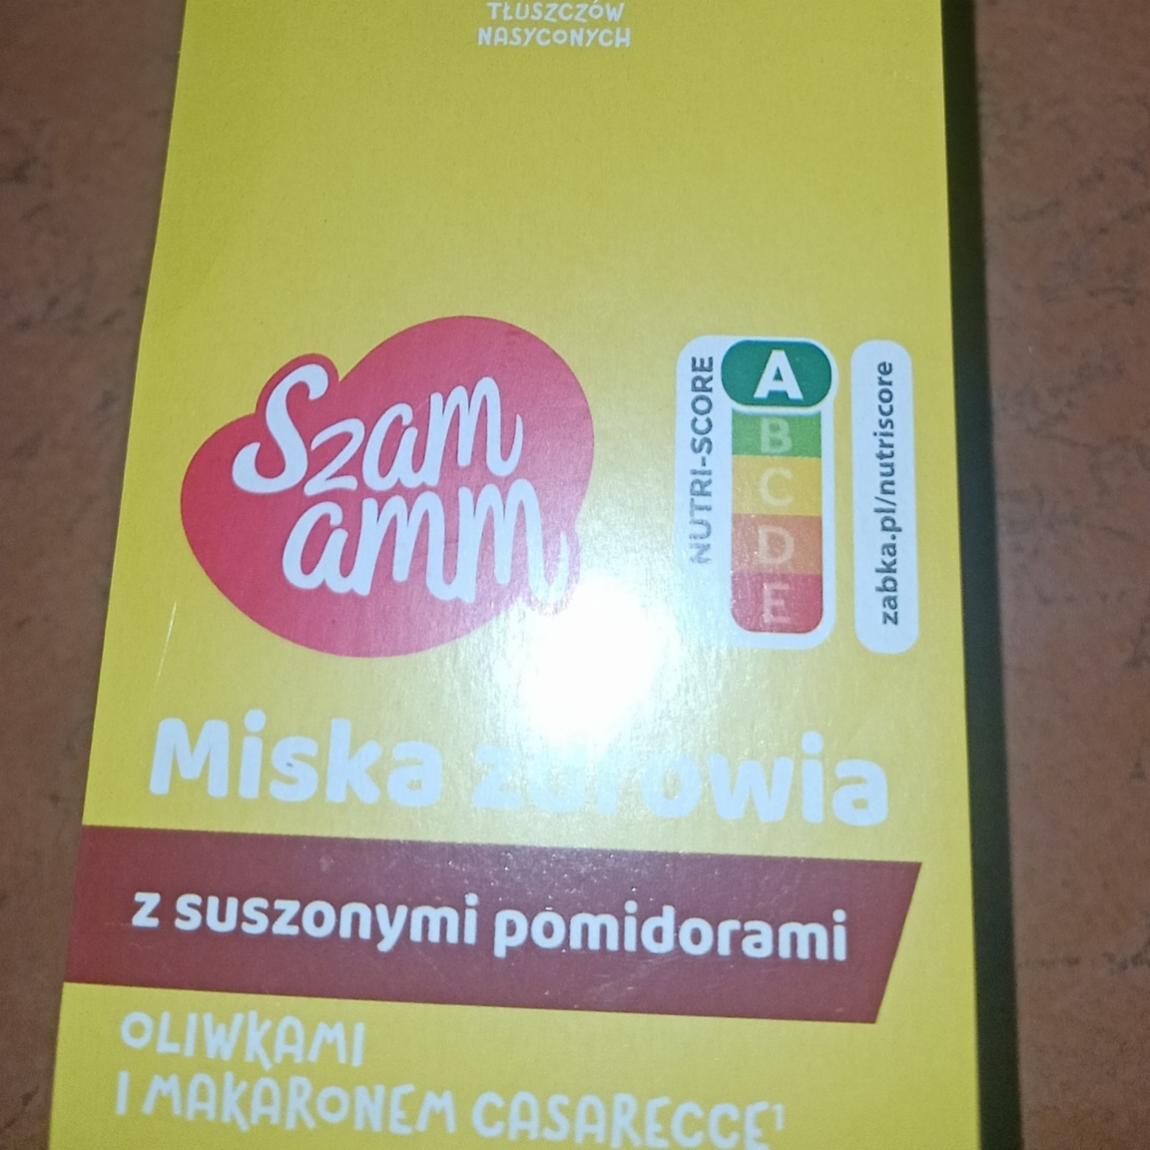 Фото - миска здоровья с сушеными помидорами Szam Amm